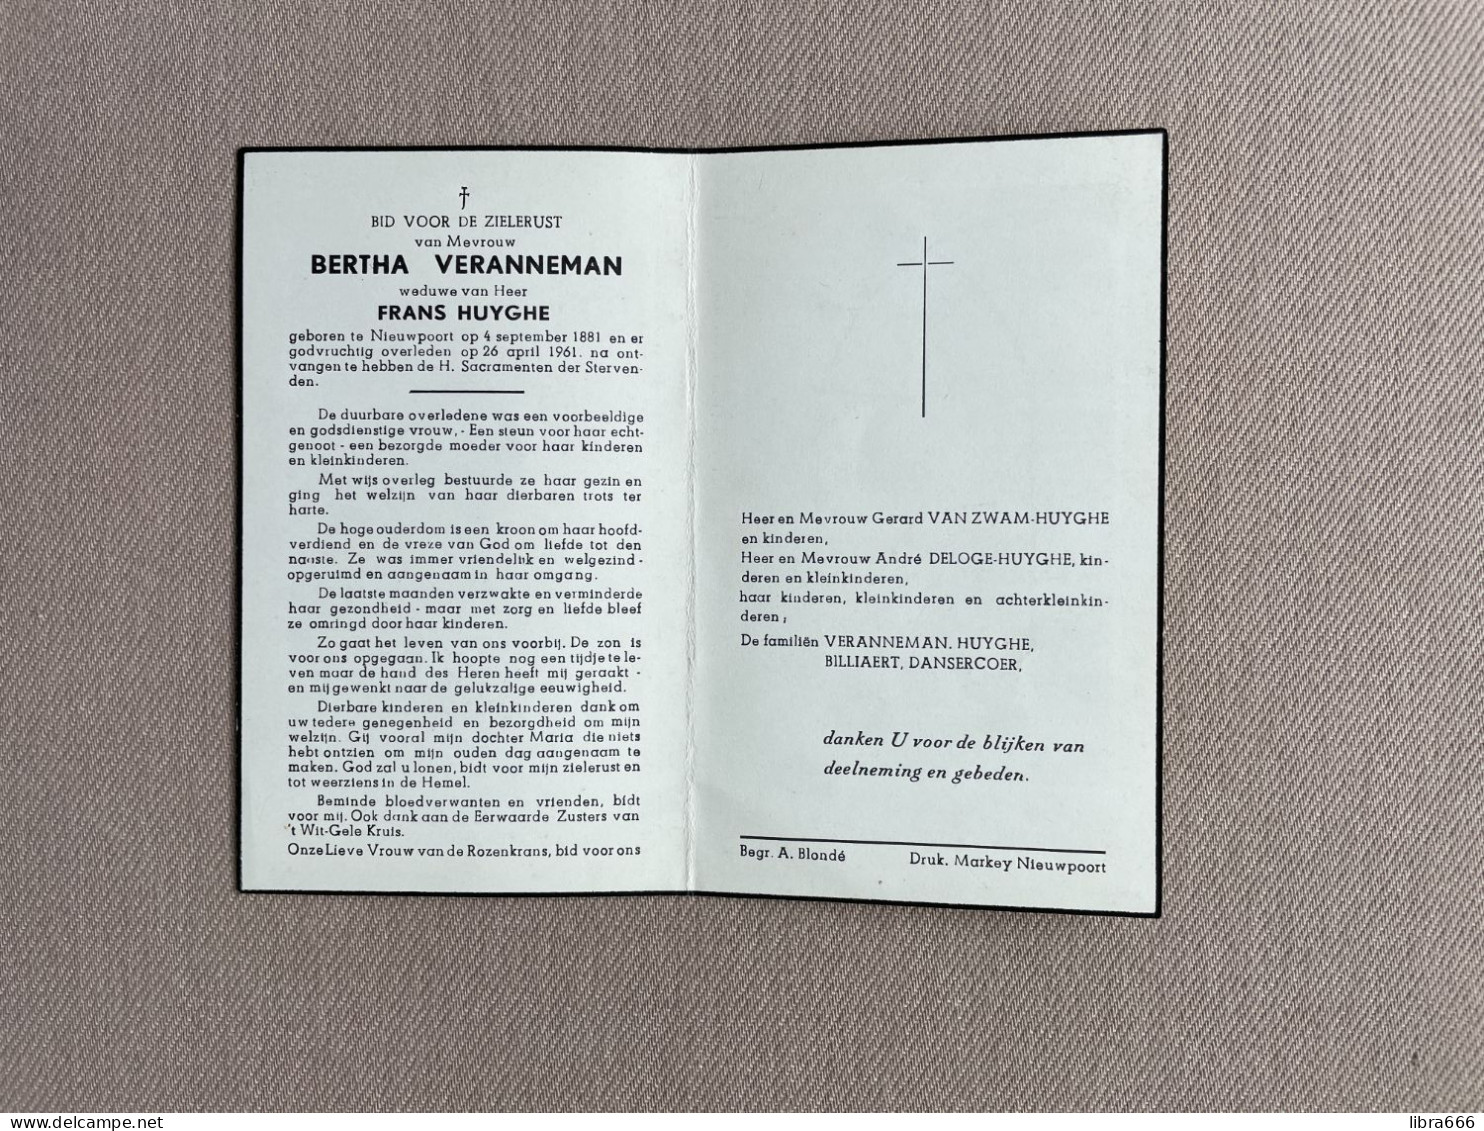 VERANNEMAN Bertha °NIEUWPOORT 1881 +NIEUWPOORT 1961 - HUYGHE - BILLIAERT - DANSERCOER - VAN ZWAM - DELOGE - Obituary Notices